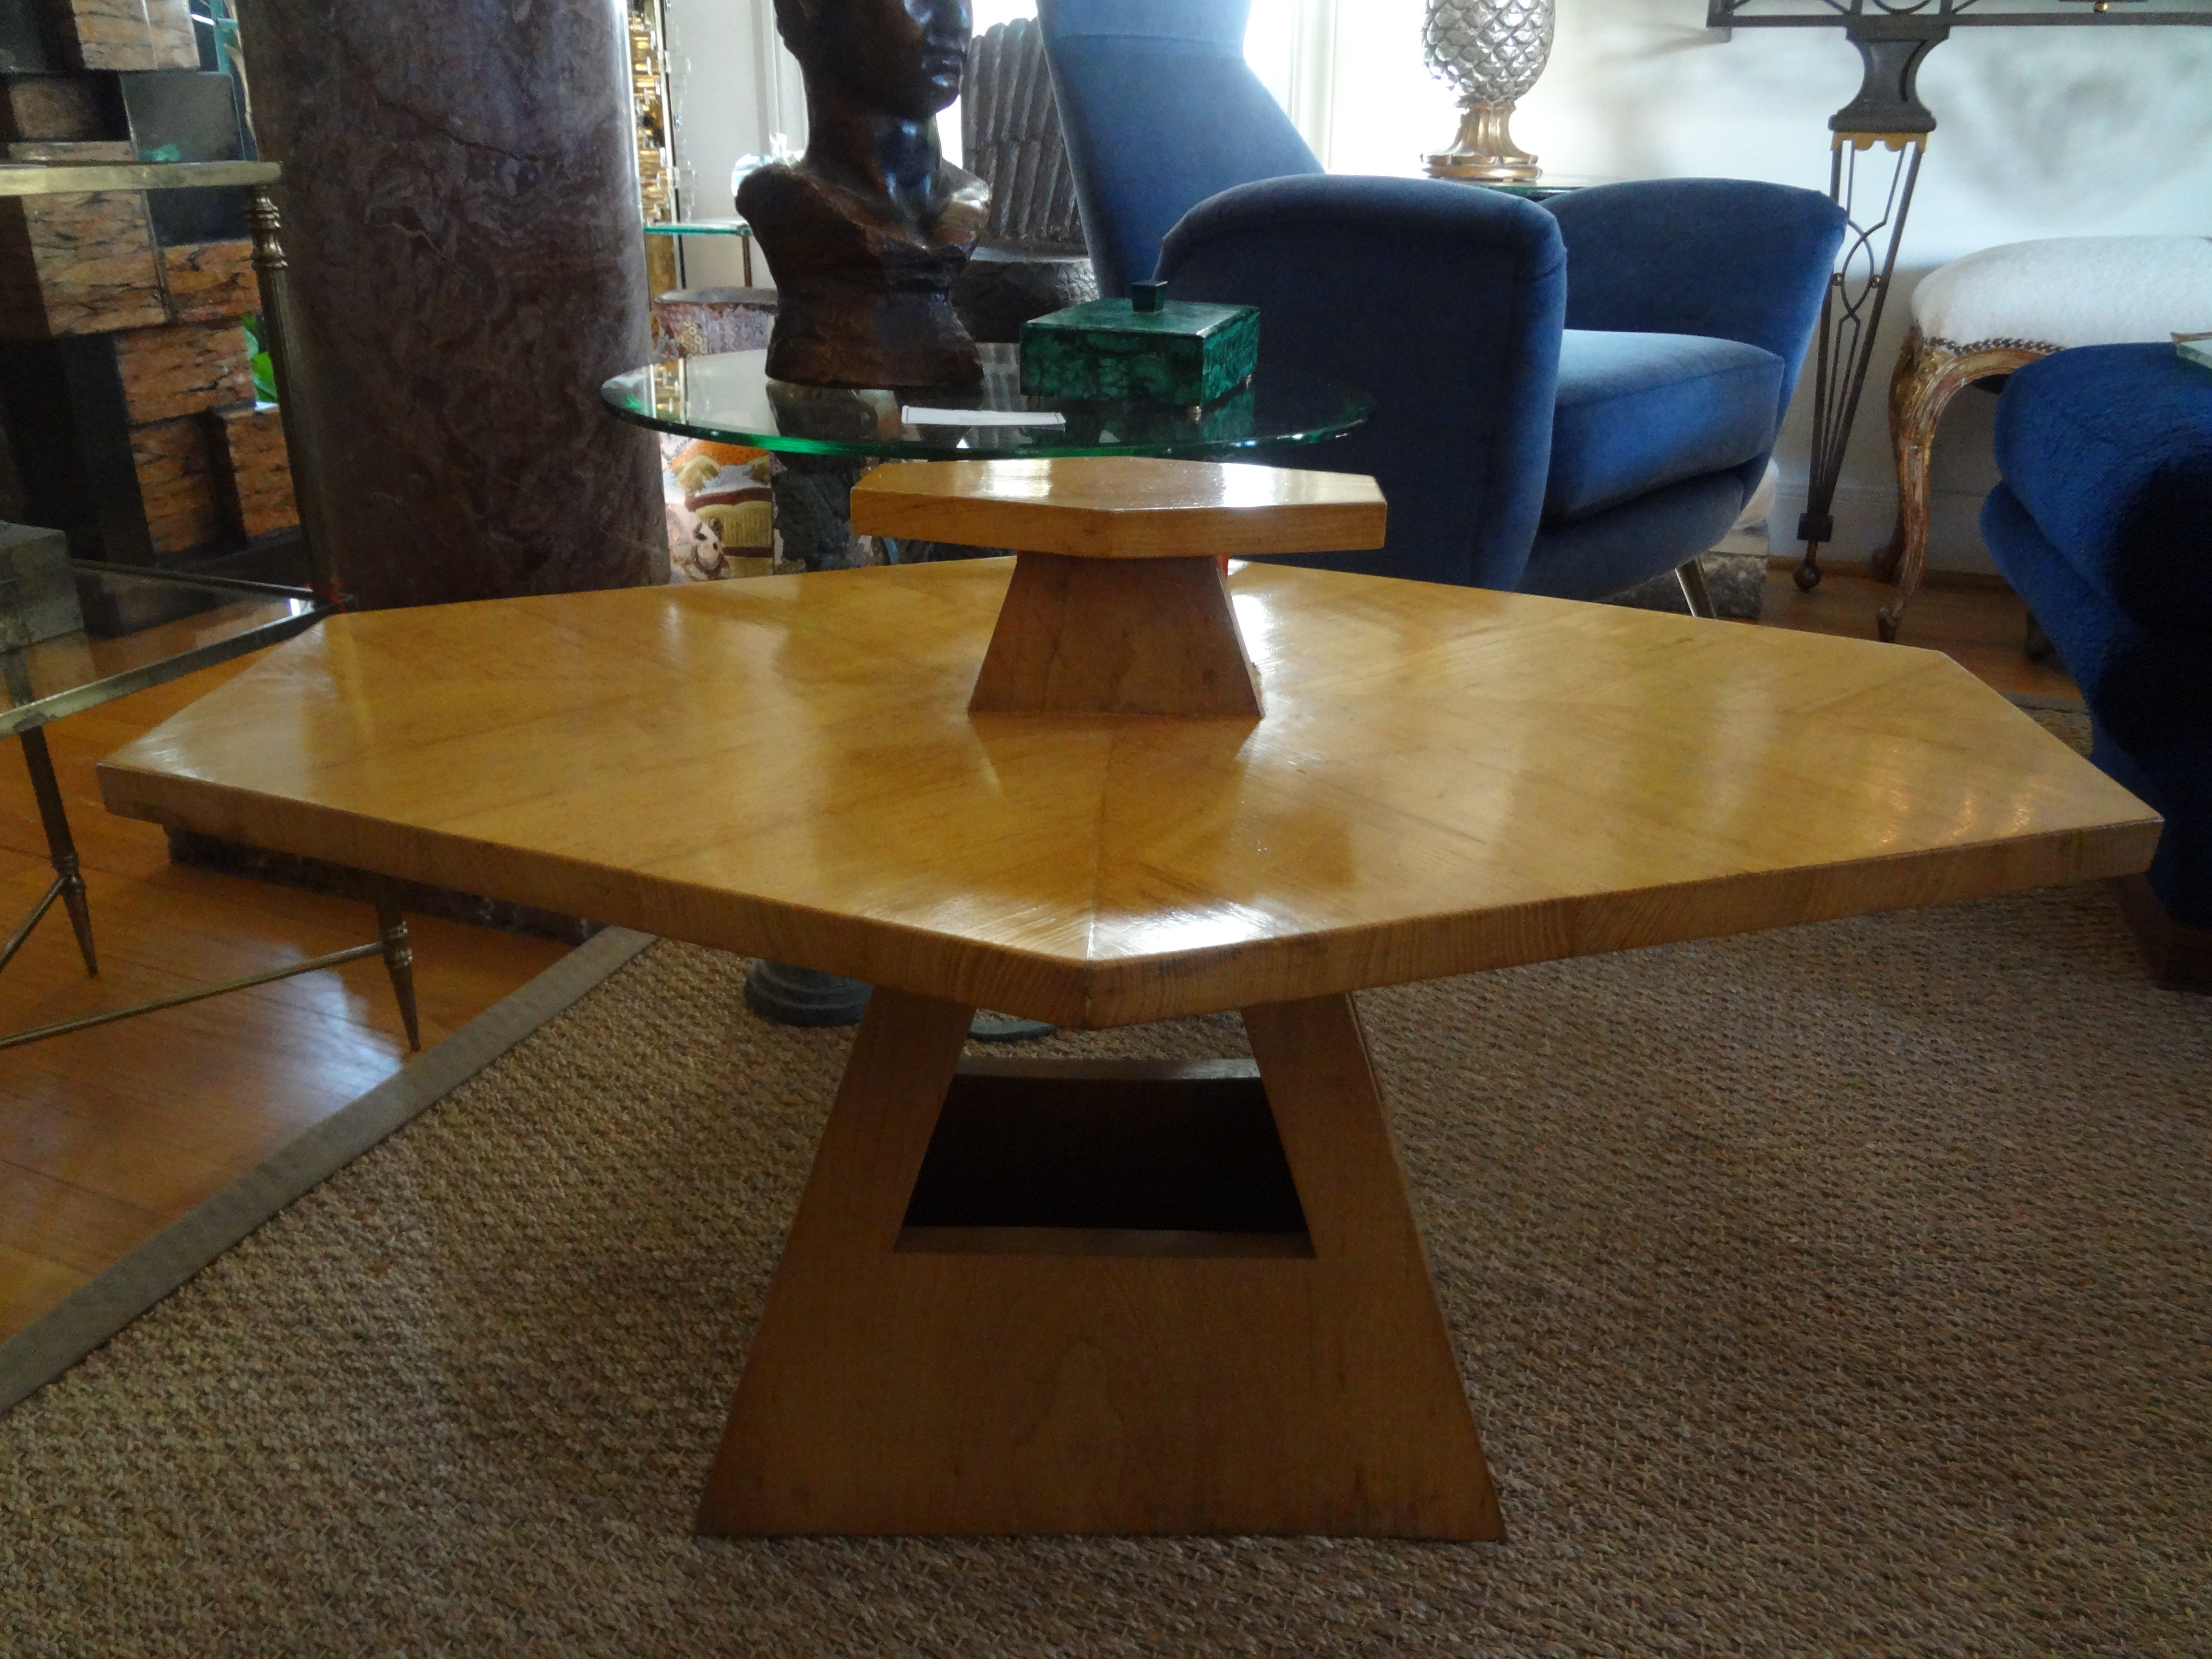 Französischer Art-Déco-Tisch, Jules Leleu zugeschrieben.
Dieser hübsche französische Art-Déco-Tisch hat ein ungewöhnliches geometrisches Design mit einem Griff und einer offenen Basis.
Dieser vielseitige französische Tisch aus Sycamore kann als